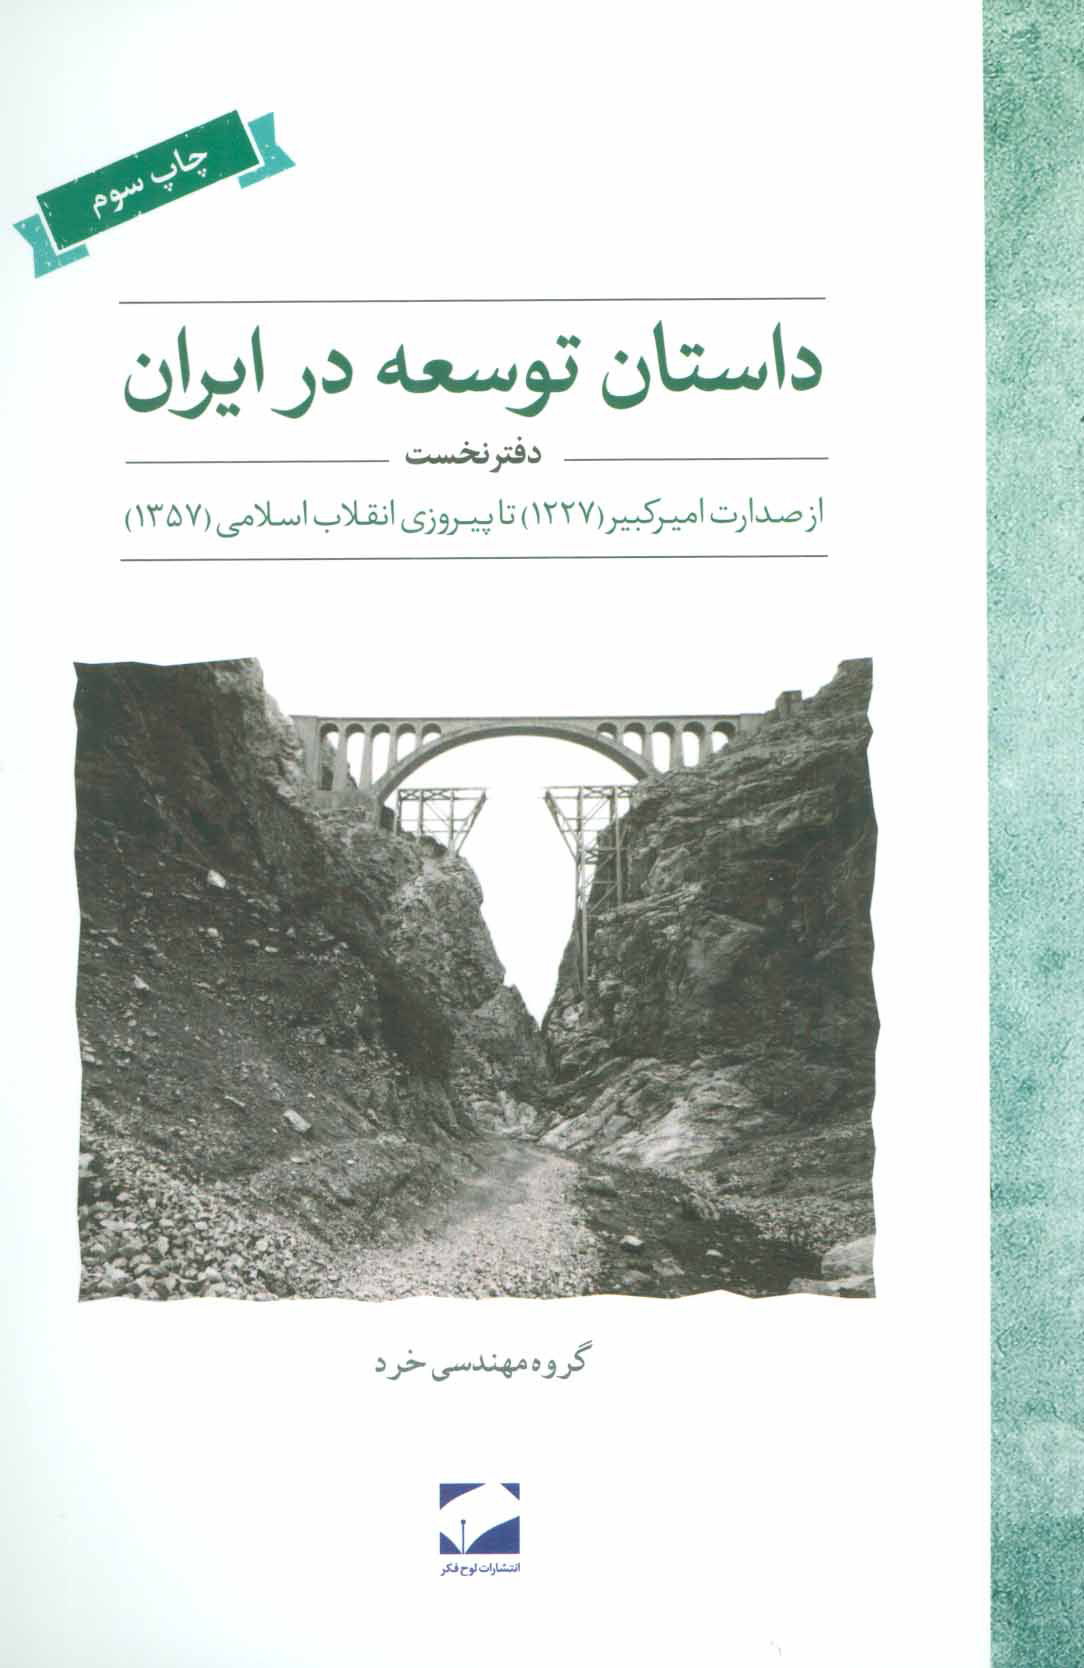 داستان توسعه در ایران, دفتر نخست, از صدرات امیرکبیر (1227) تا پیروزی انقلاب اسلامی (1357)